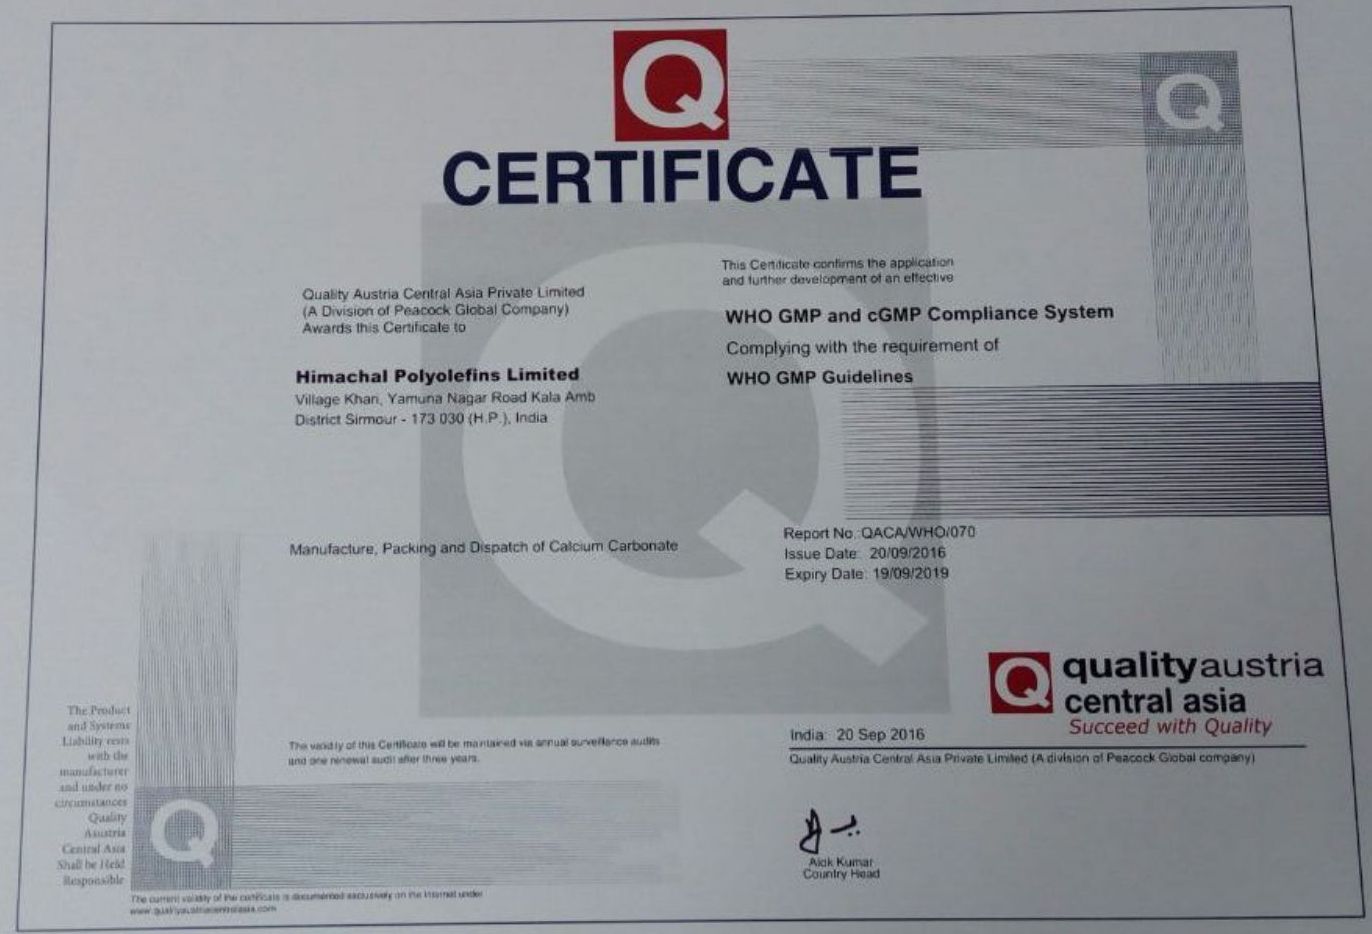 WHO GMP Certificate